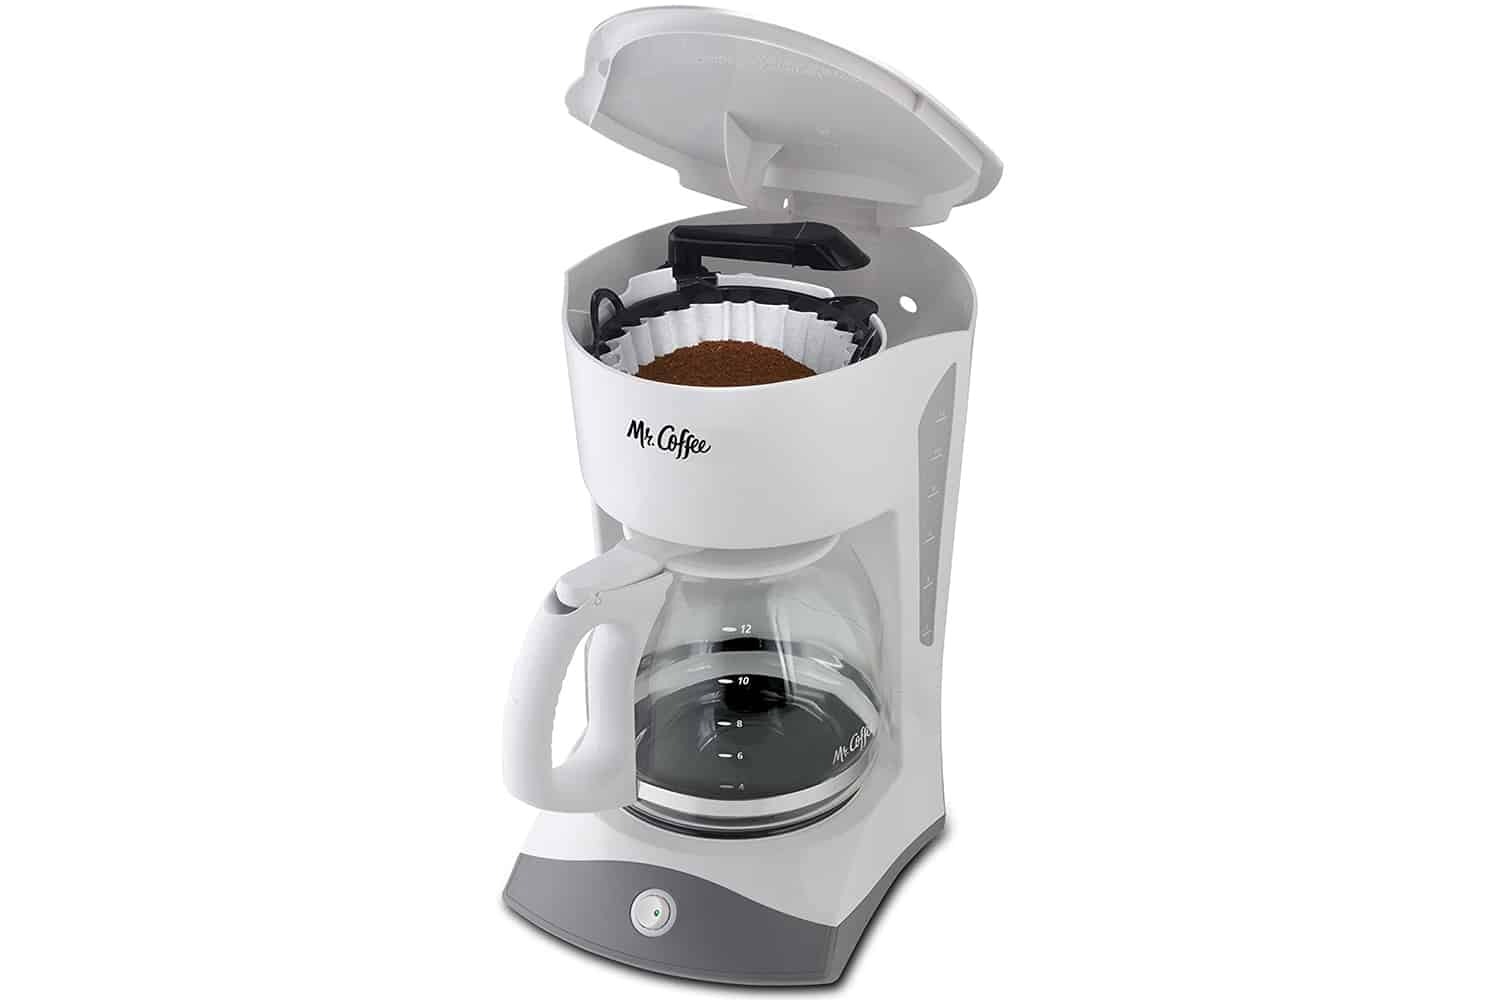 https://www.coffeeness.de/wp-content/uploads/2022/02/Mr-Coffee-12-Cup-Coffee-Maker-in-White.jpg